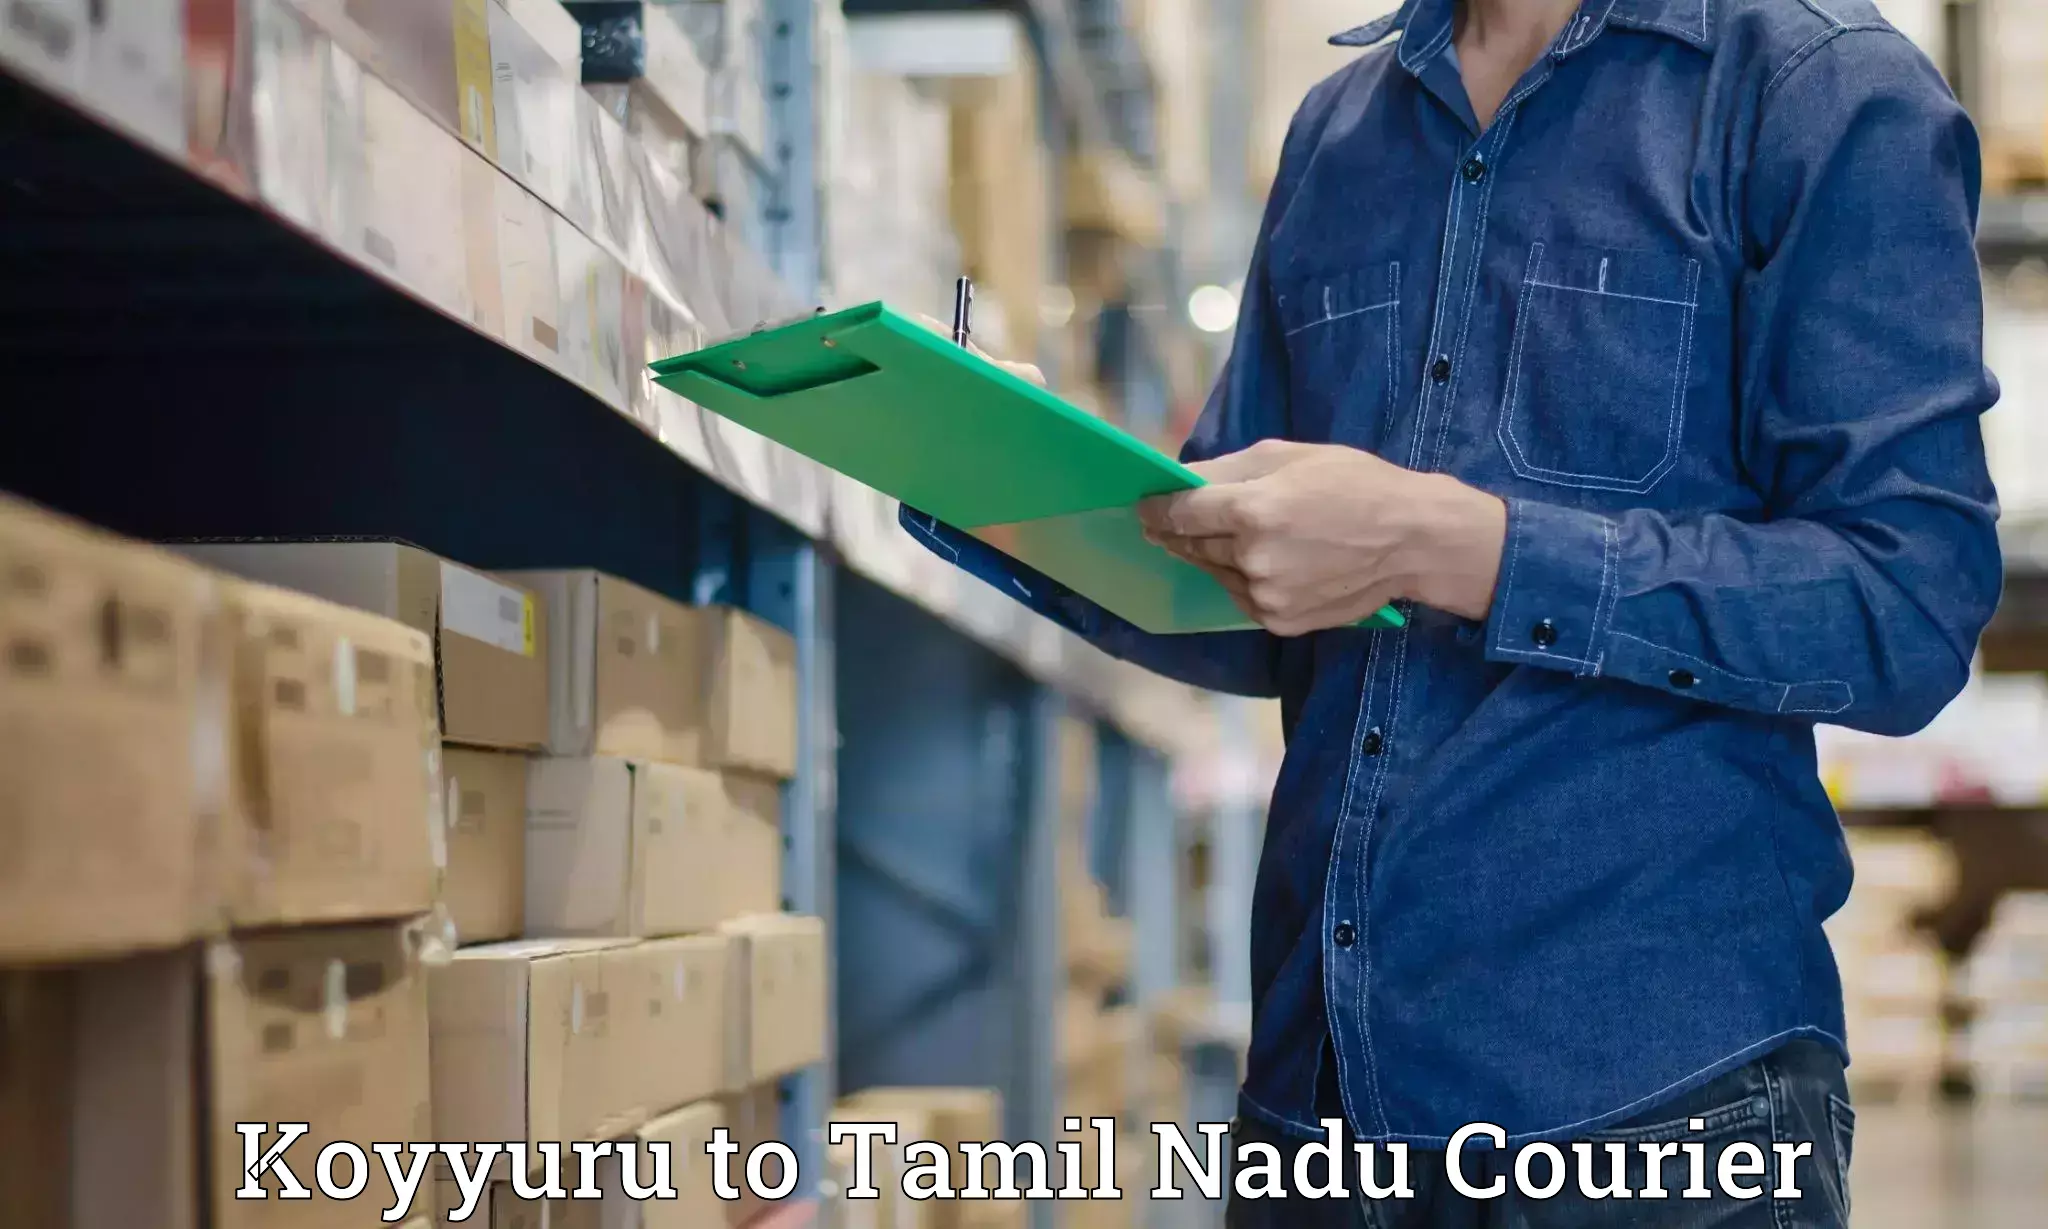 Custom courier packaging in Koyyuru to Tamil Nadu